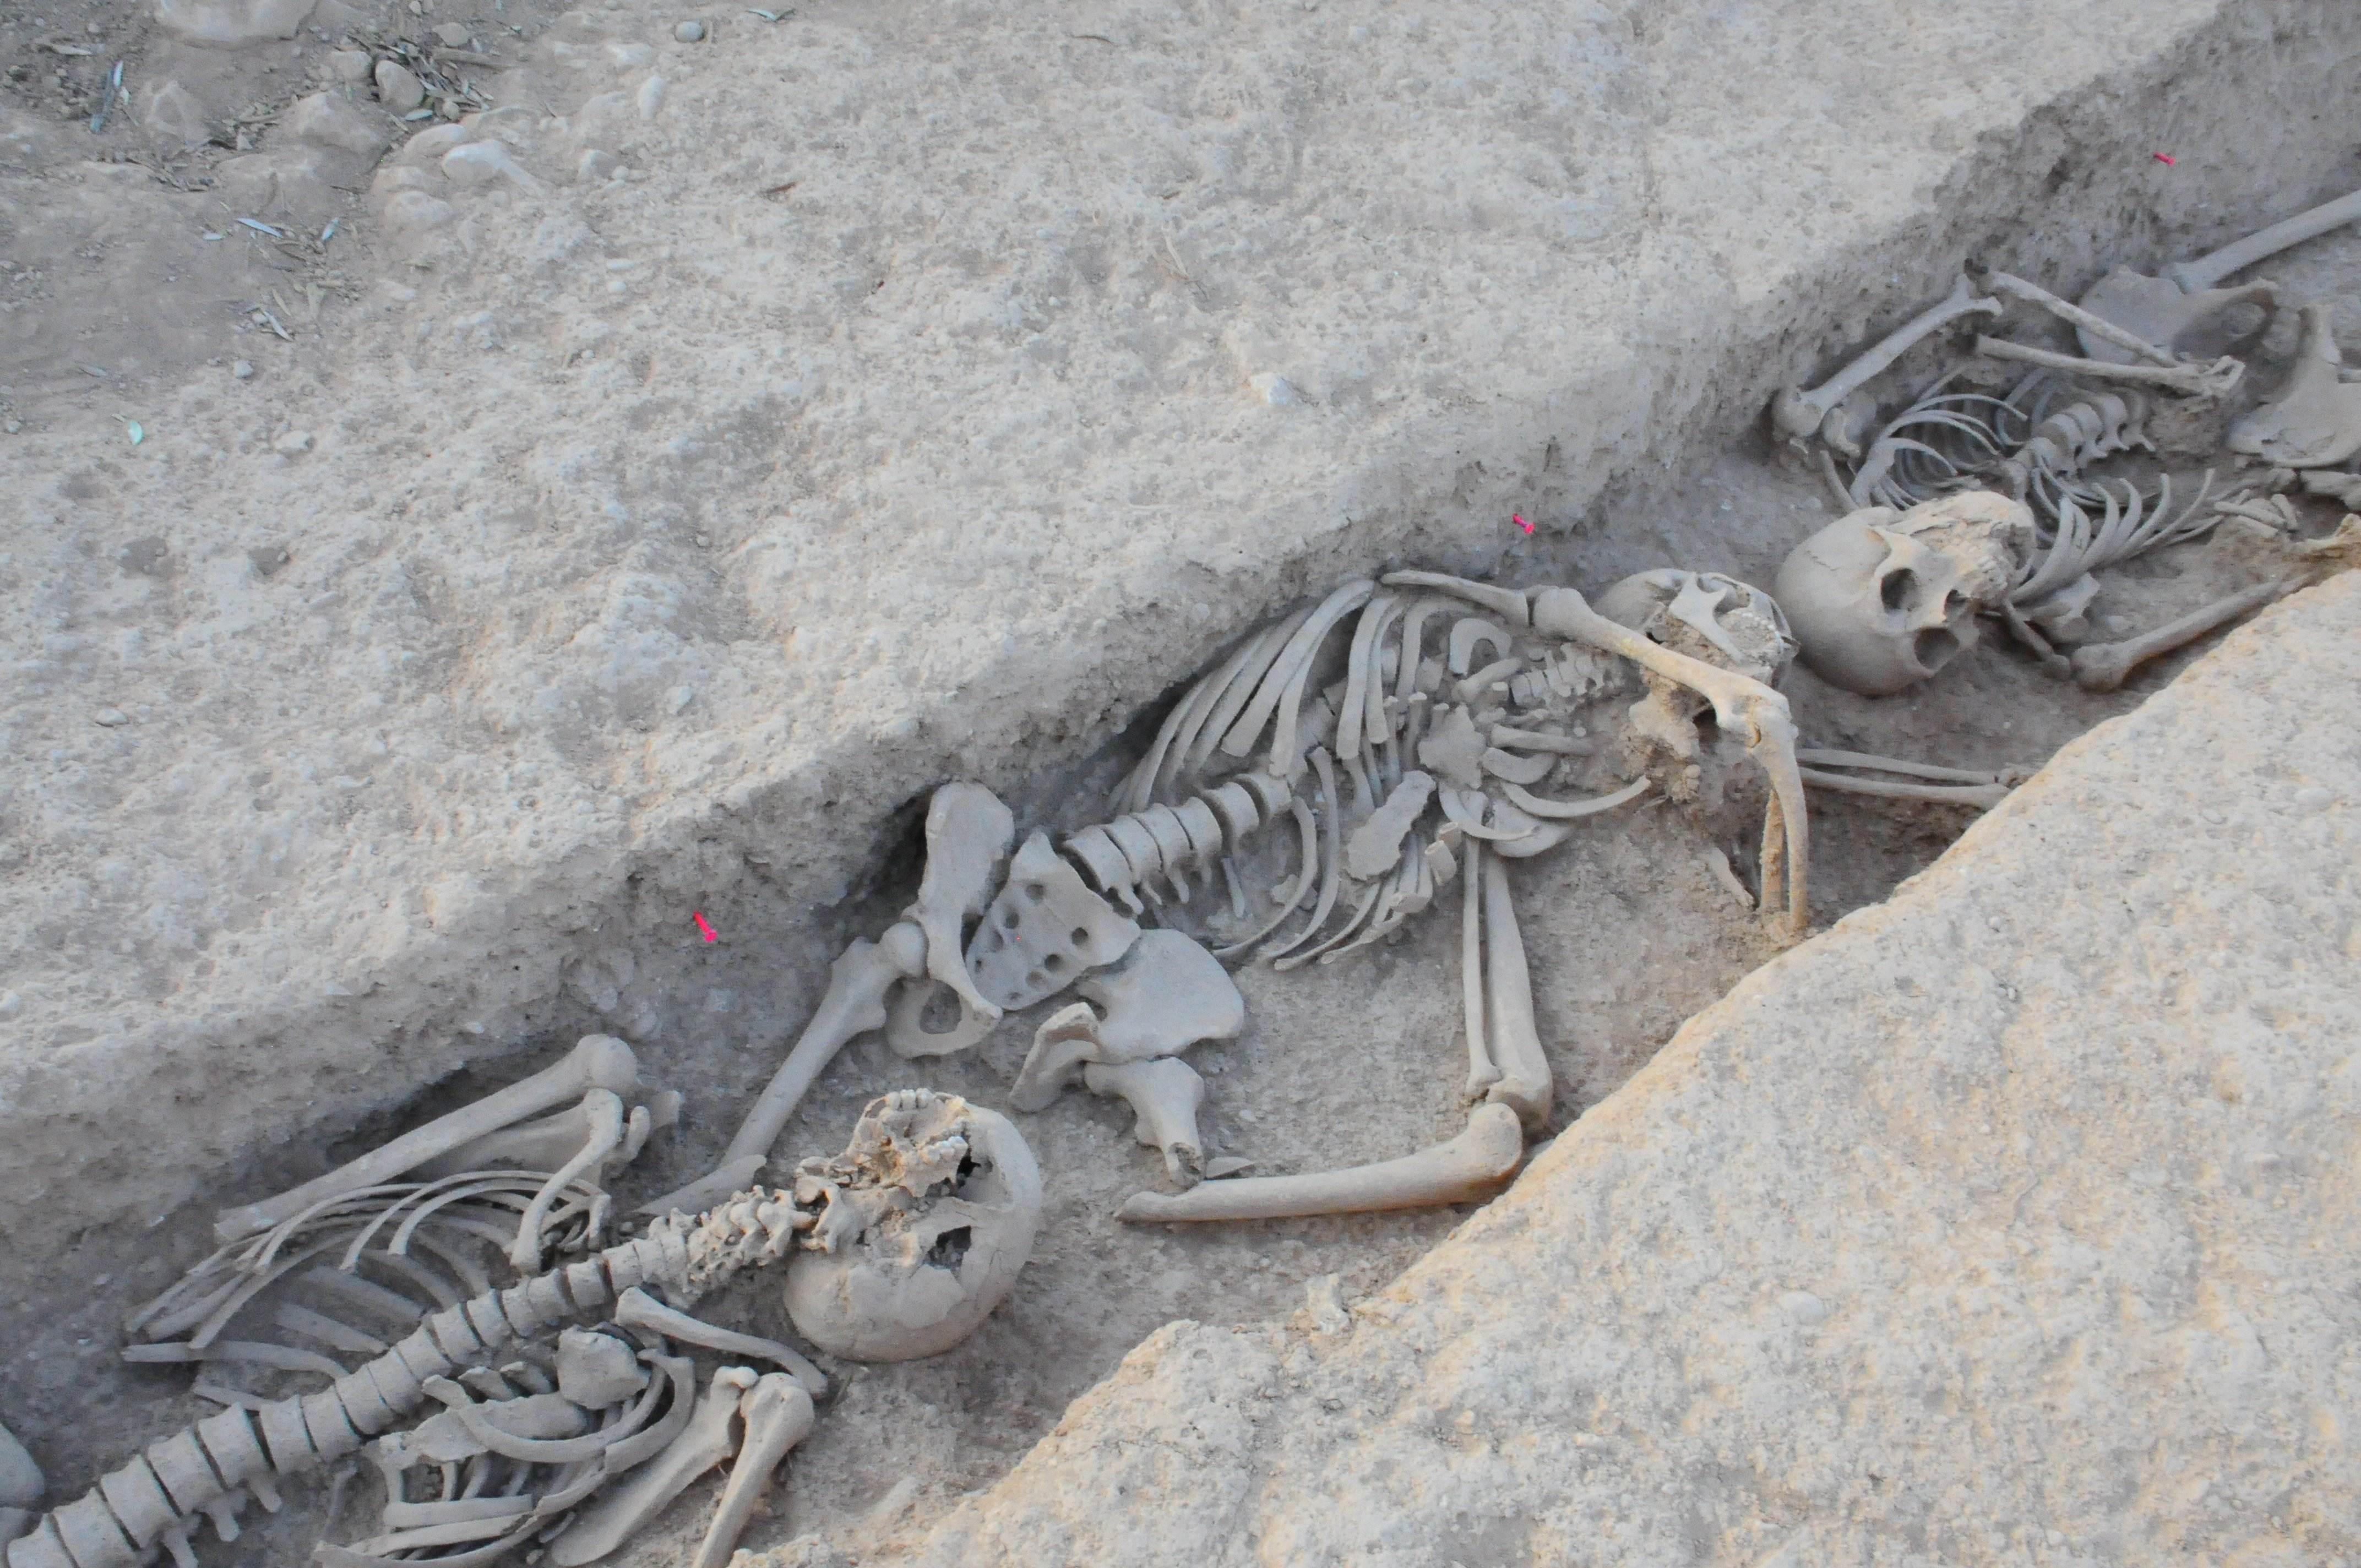 Vestigios del horror: exhumados los restos de 26 soldados republicanos en dos fosas comunes catalanas